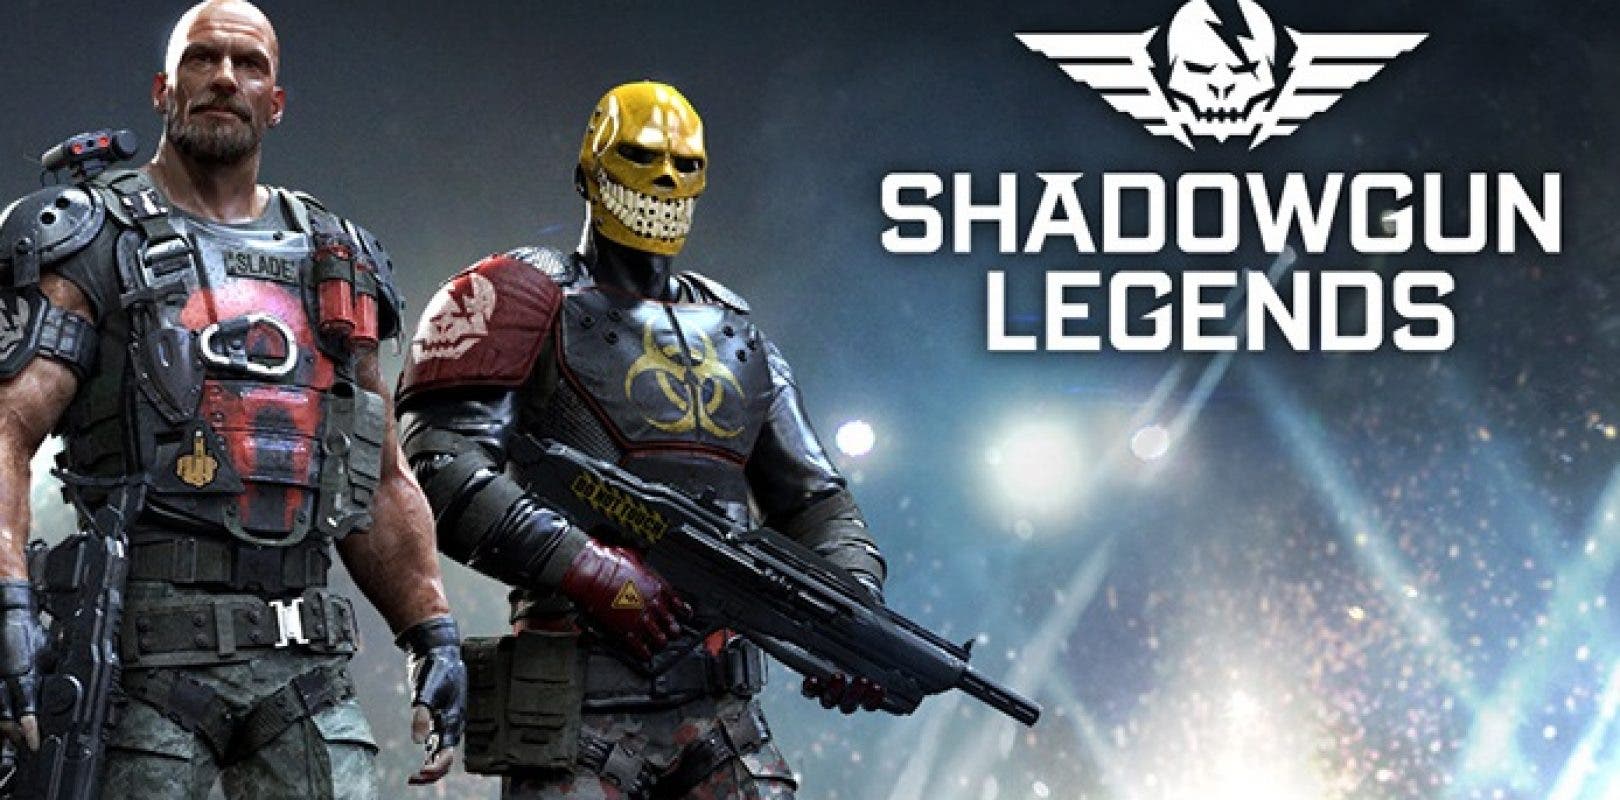 Shadowgun Legends estrena tráiler de lanzamiento